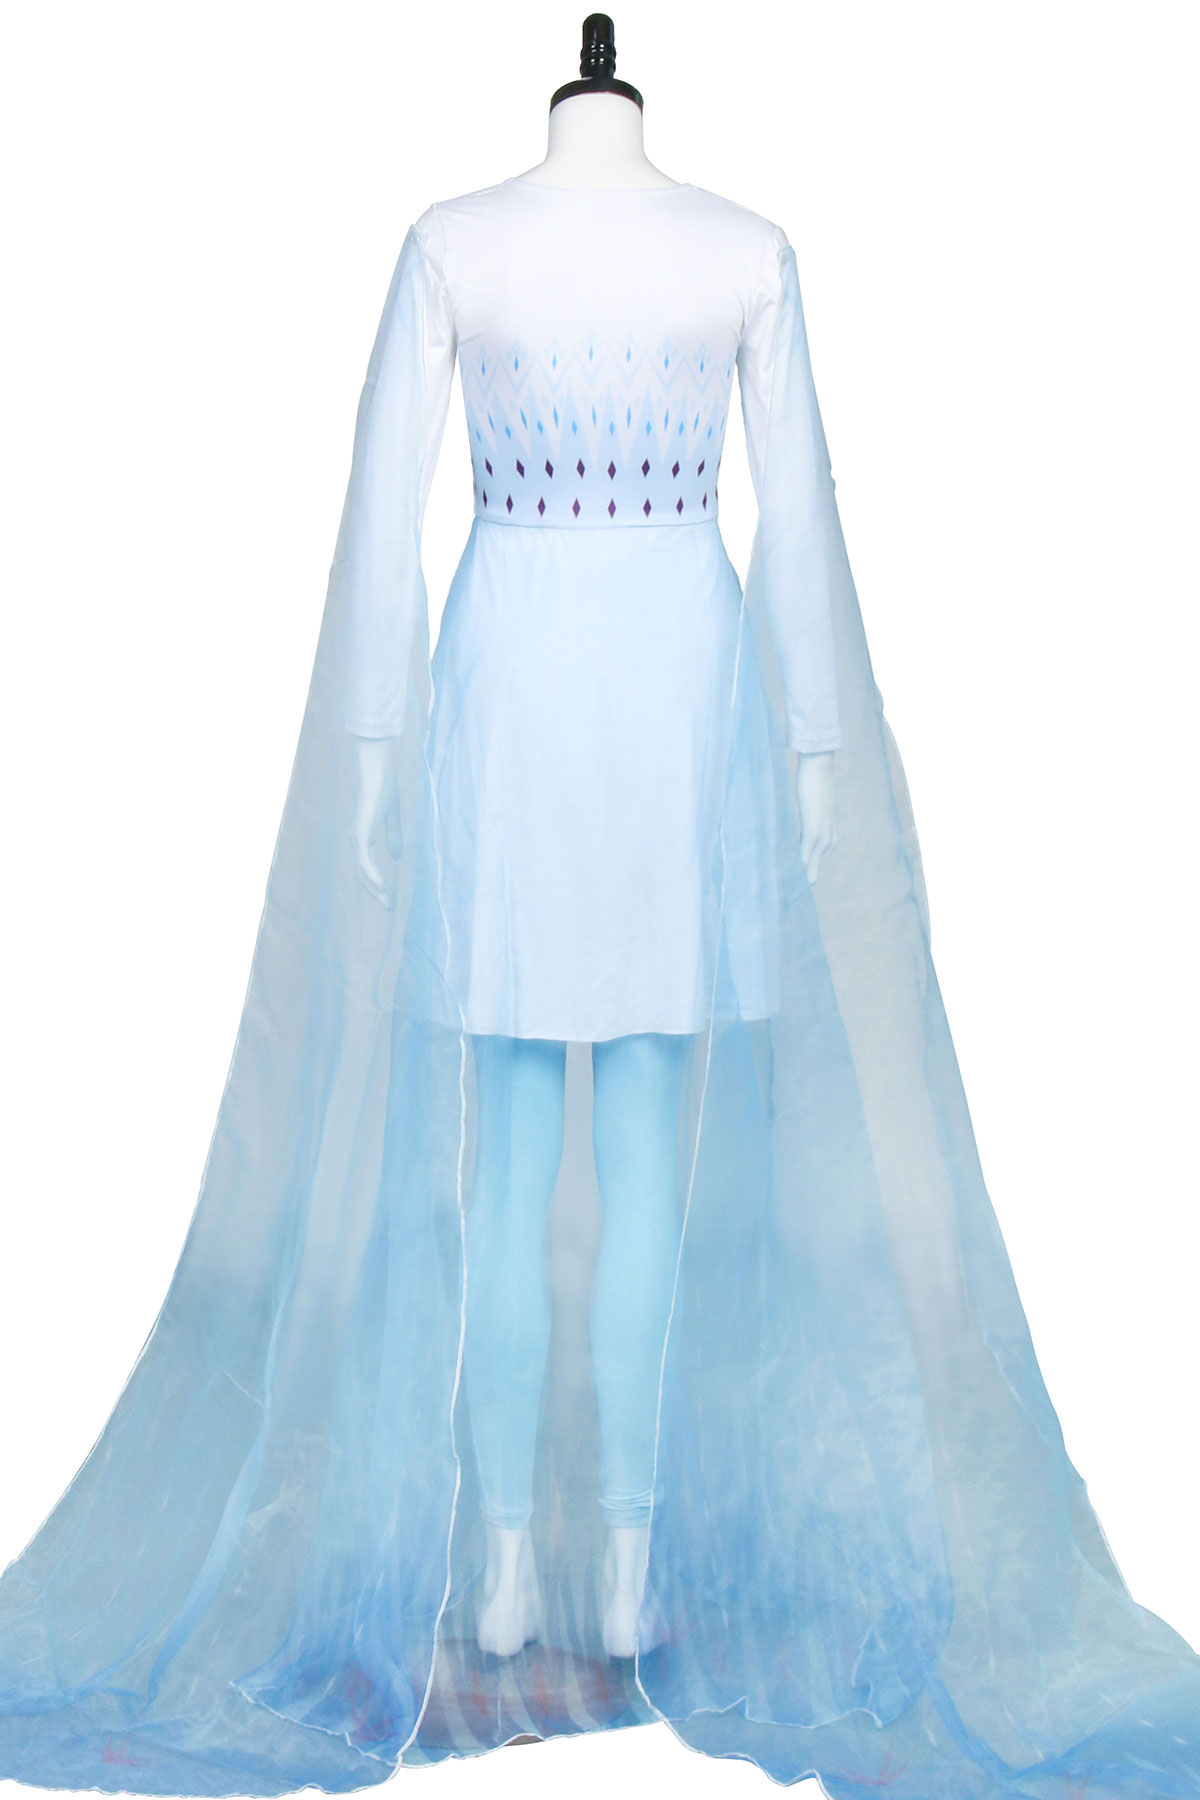 Frozen 2 Ice Gown Queen Elsa Ahtohallan Cave Cosplay Costume Dress